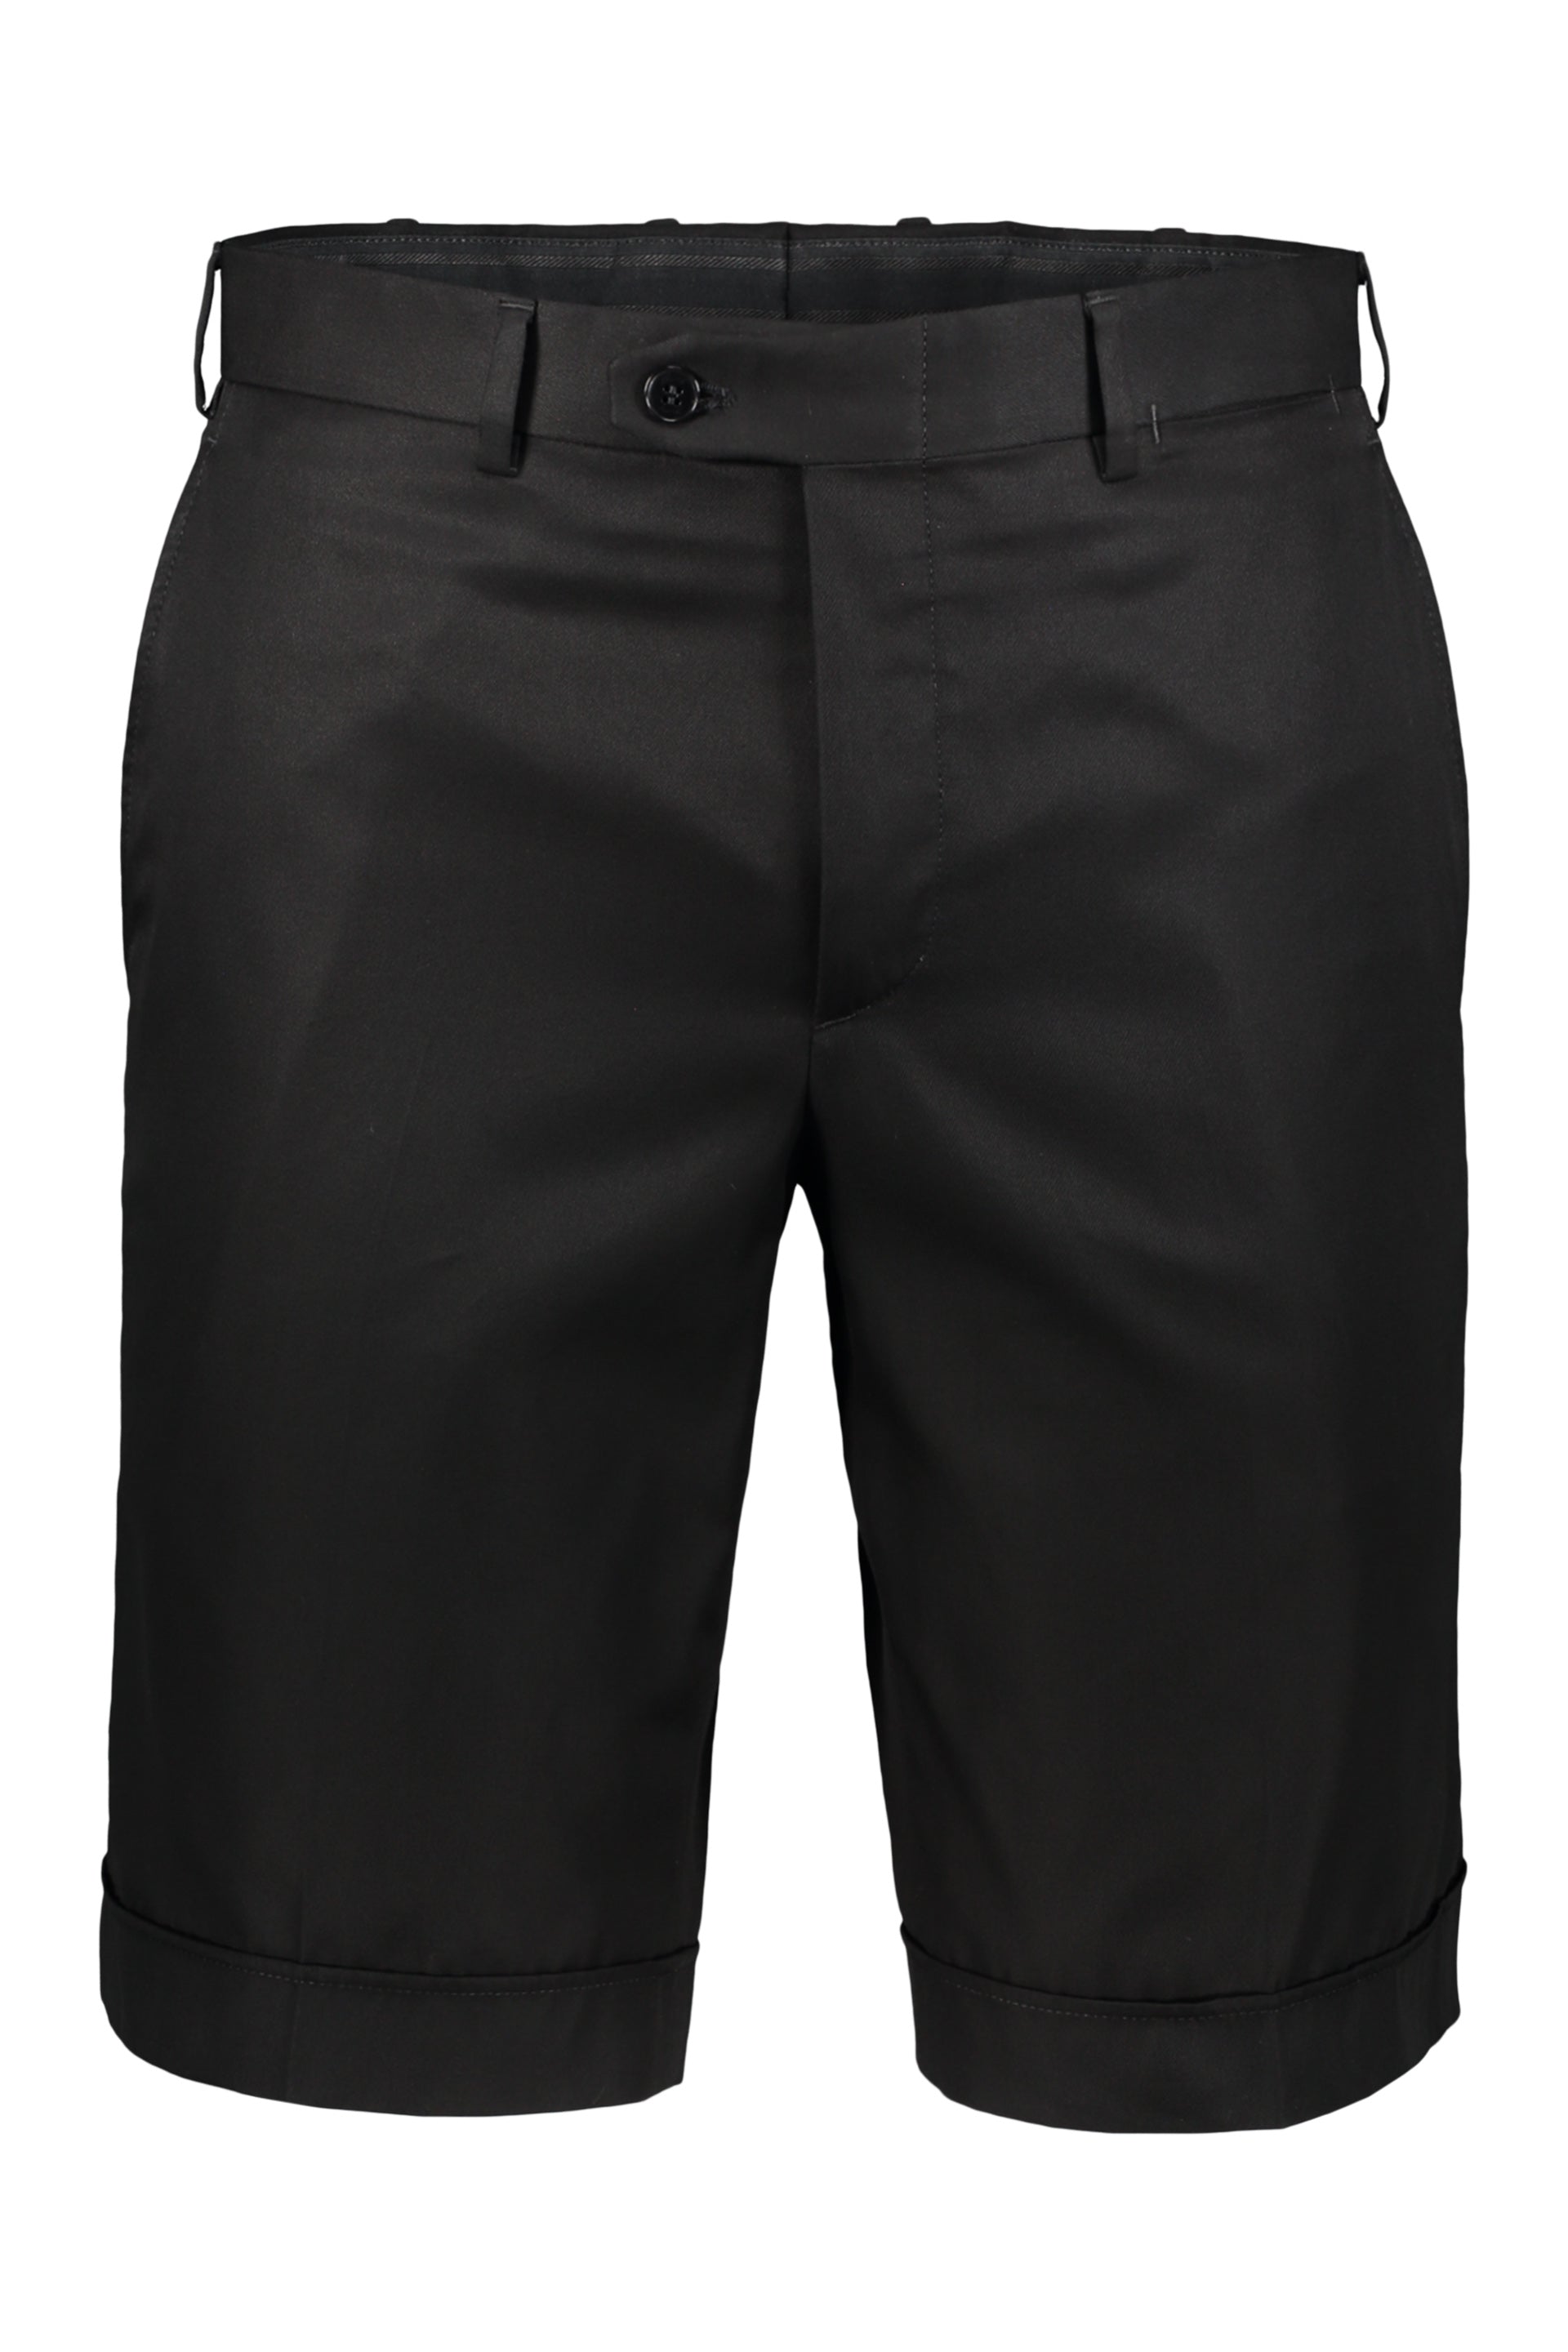 BRIONI-OUTLET-SALE-Cotton-bermuda-shorts-Hosen-46-ARCHIVE-COLLECTION.jpg